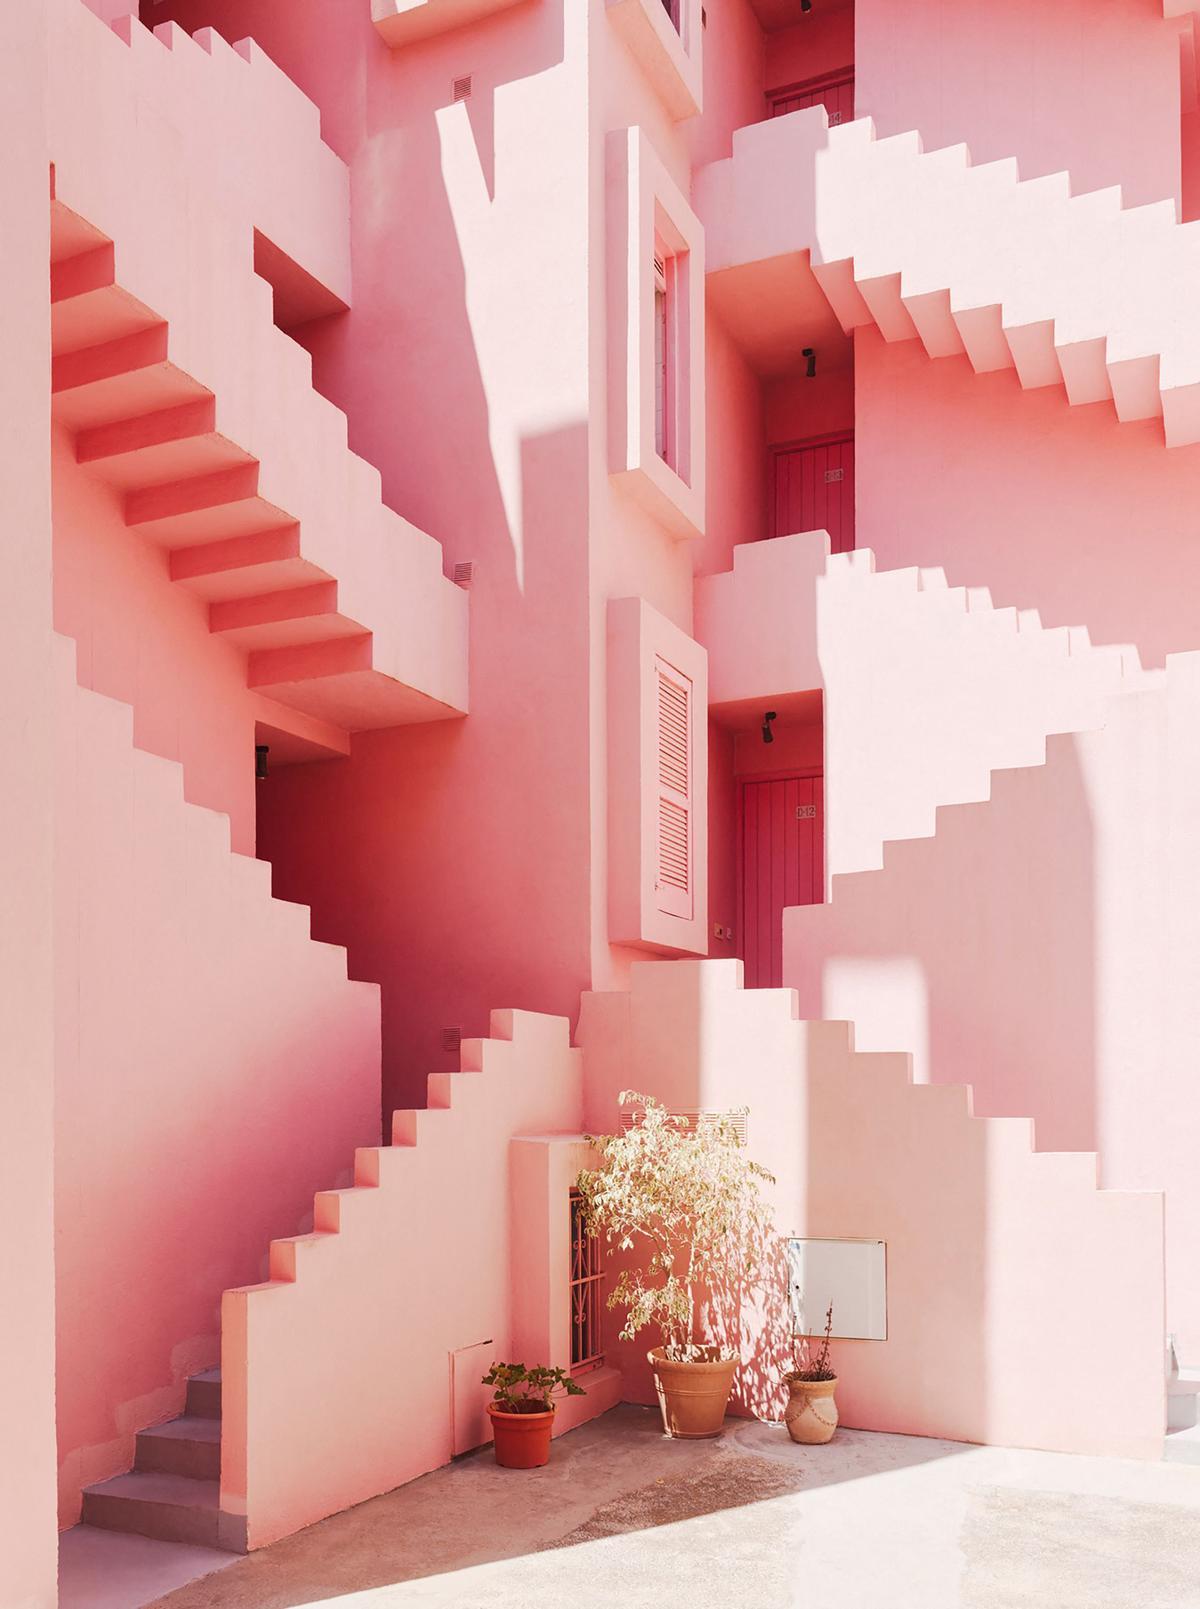 Complejo de apartamentos La Muralla Roja diseñado por el arquitecto Ricardo Bofill, en Manzanera, Calpe